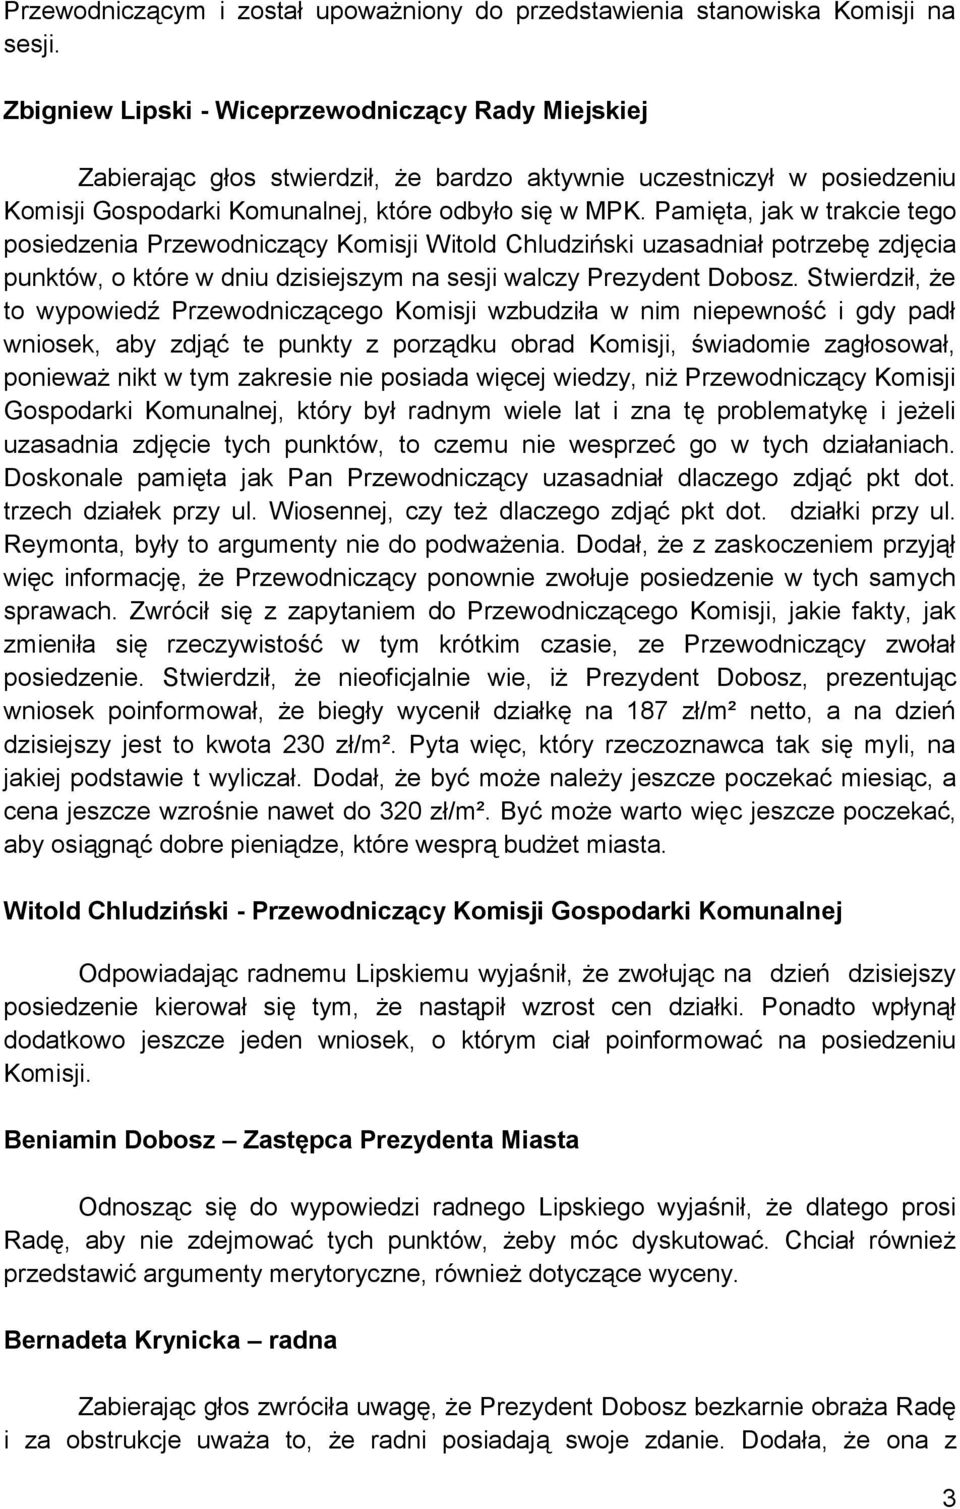 Pamięta, jak w trakcie tego posiedzenia Przewodniczący Komisji Witold Chludziński uzasadniał potrzebę zdjęcia punktów, o które w dniu dzisiejszym na sesji walczy Prezydent Dobosz.